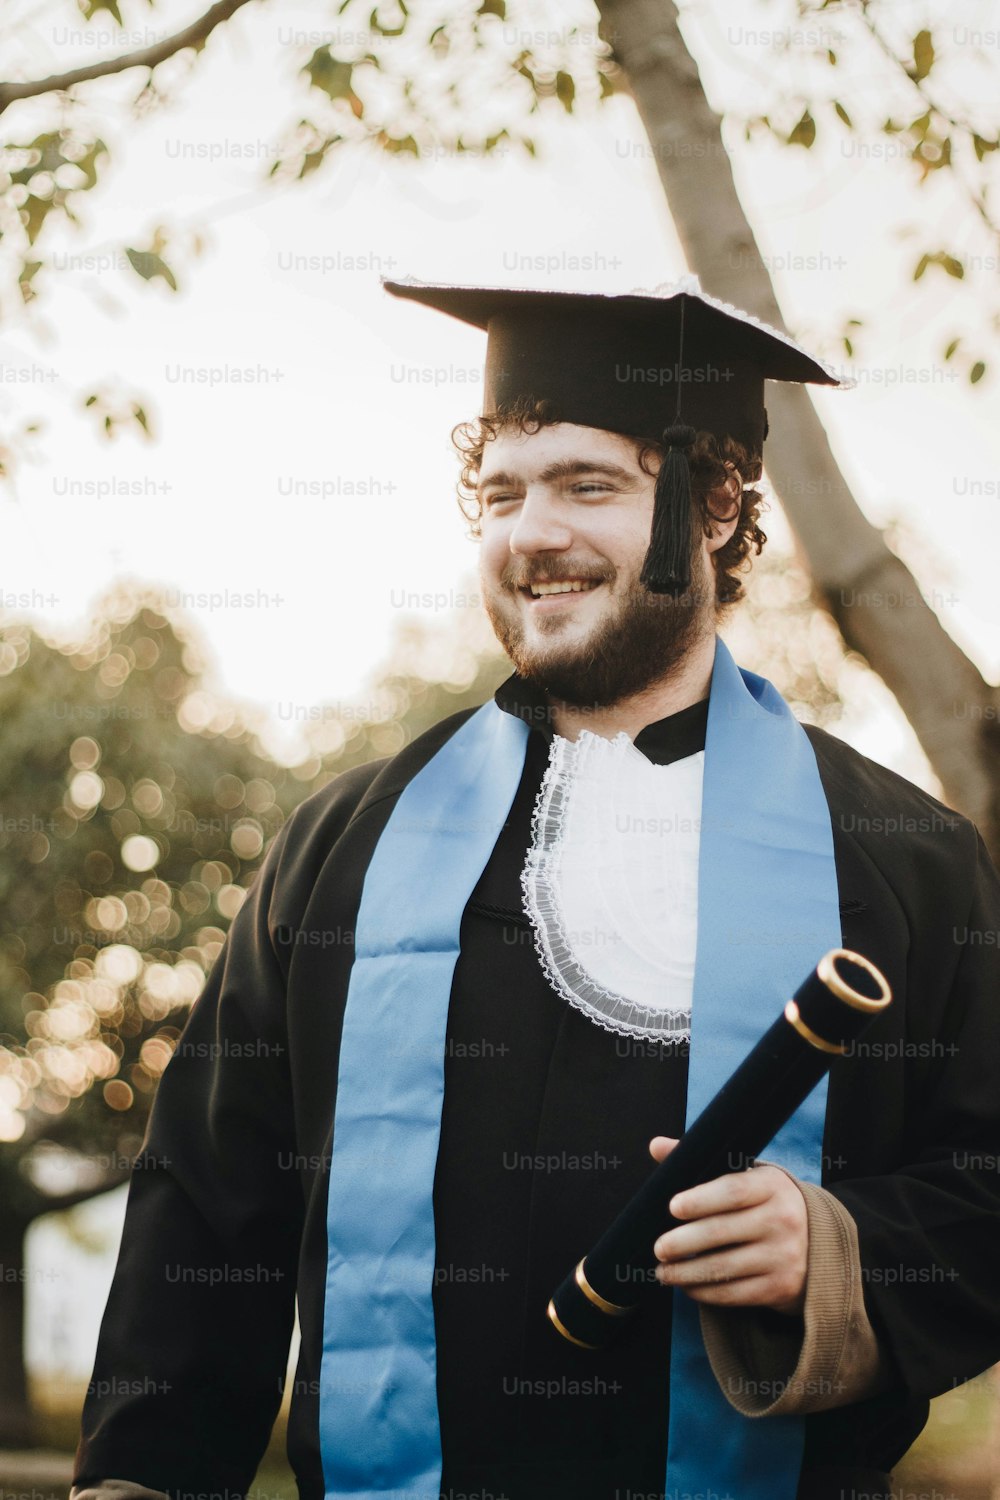 Un hombre con gorra y bata sosteniendo un diploma